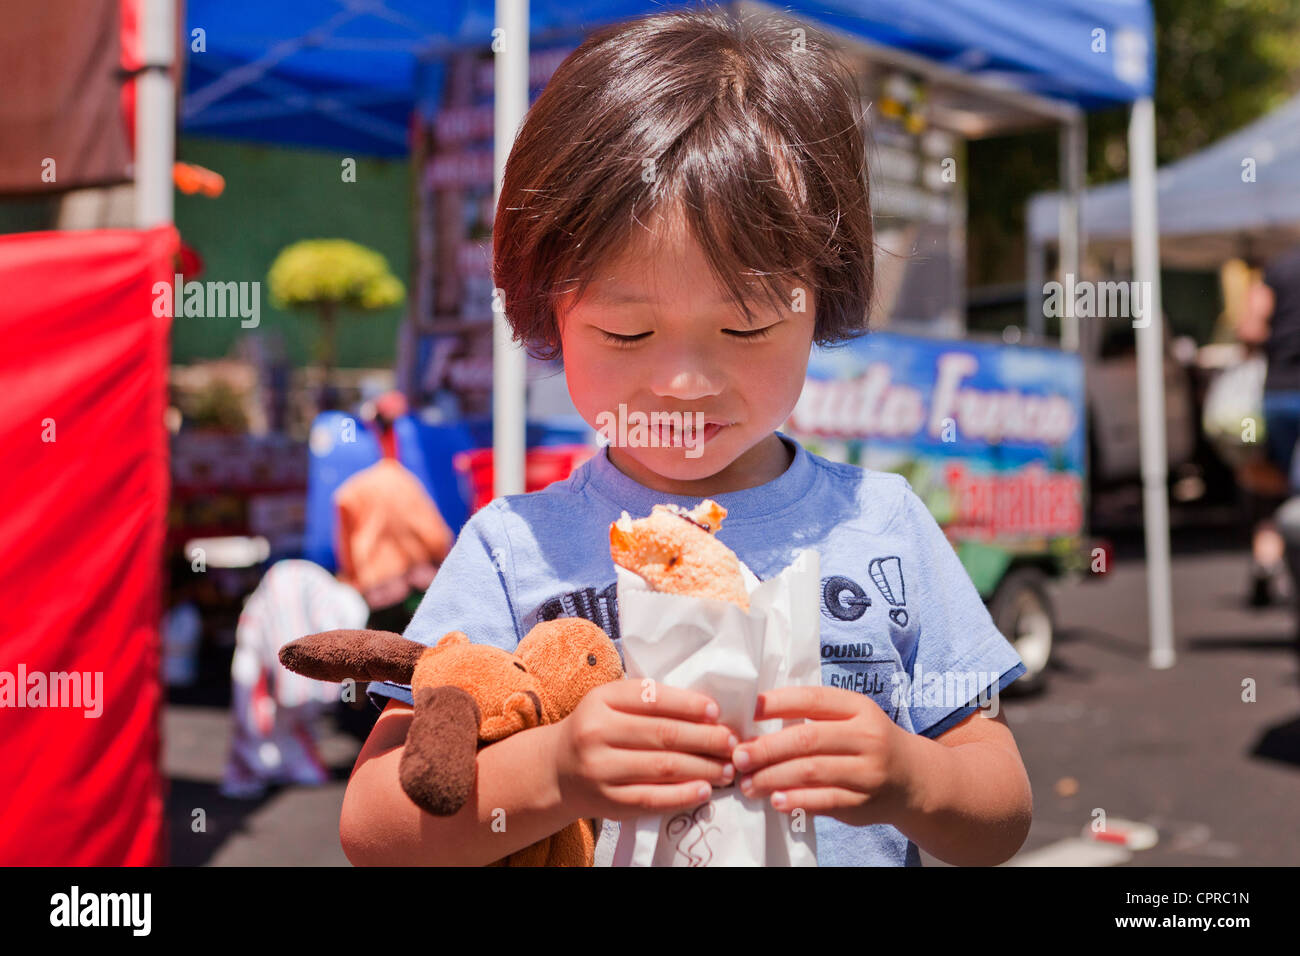 Asiatische junge Essen eine Gebäck auf dem Bauernmarkt - Stockton, Kalifornien USA Stockfoto